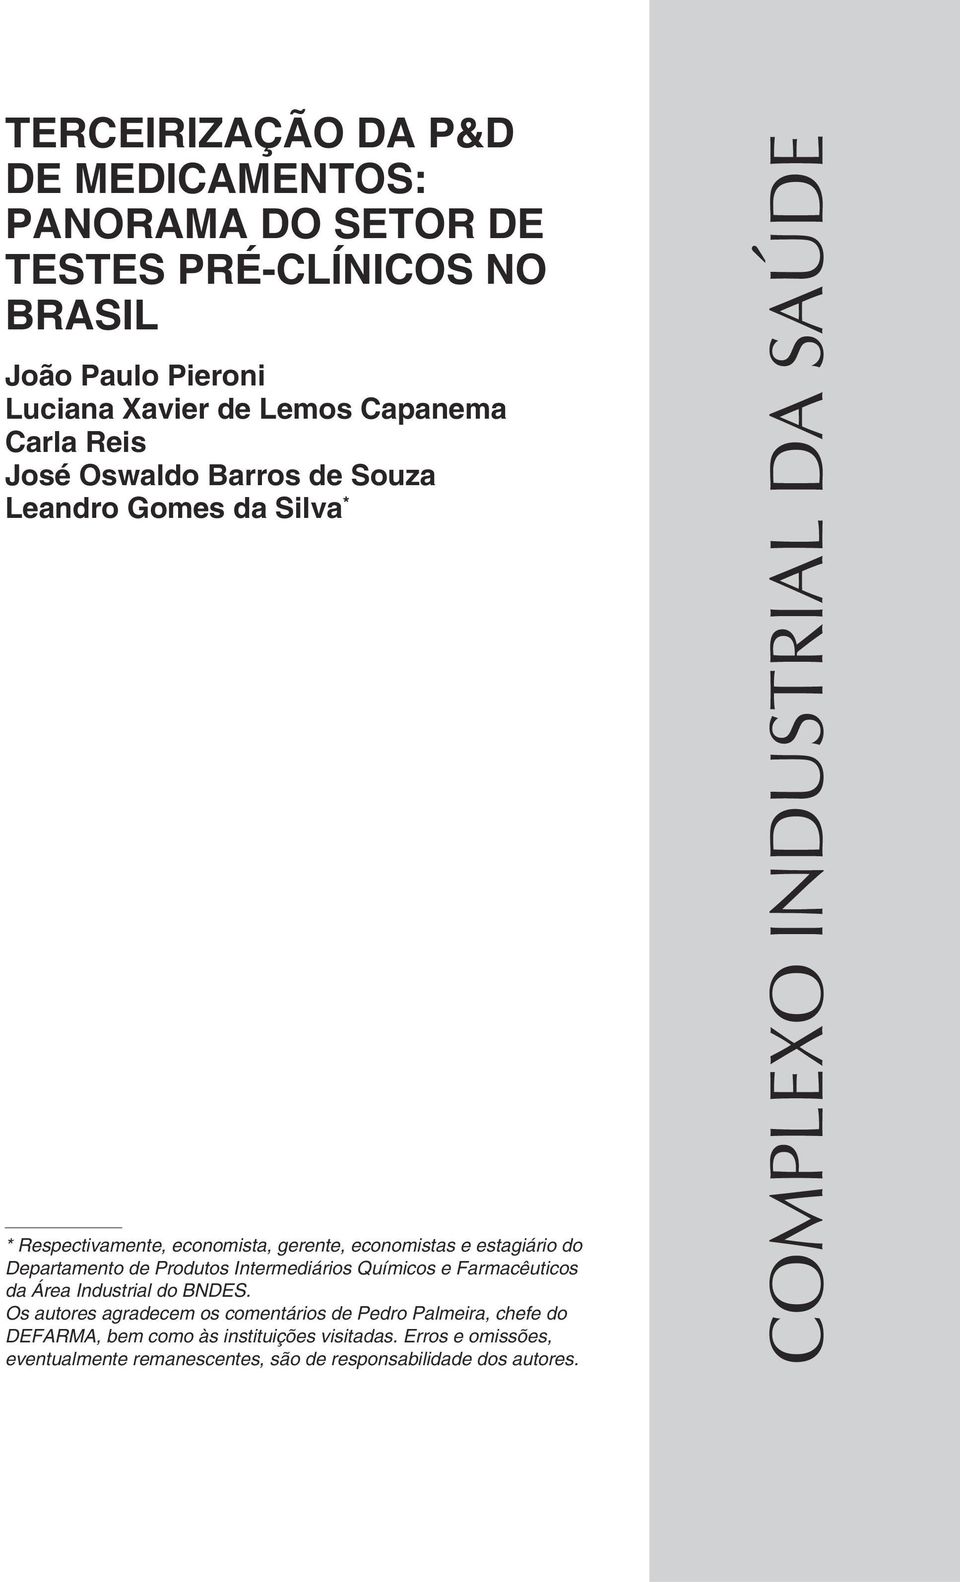 Produtos Intermediários Químicos e Farmacêuticos da Área Industrial do BNDES.